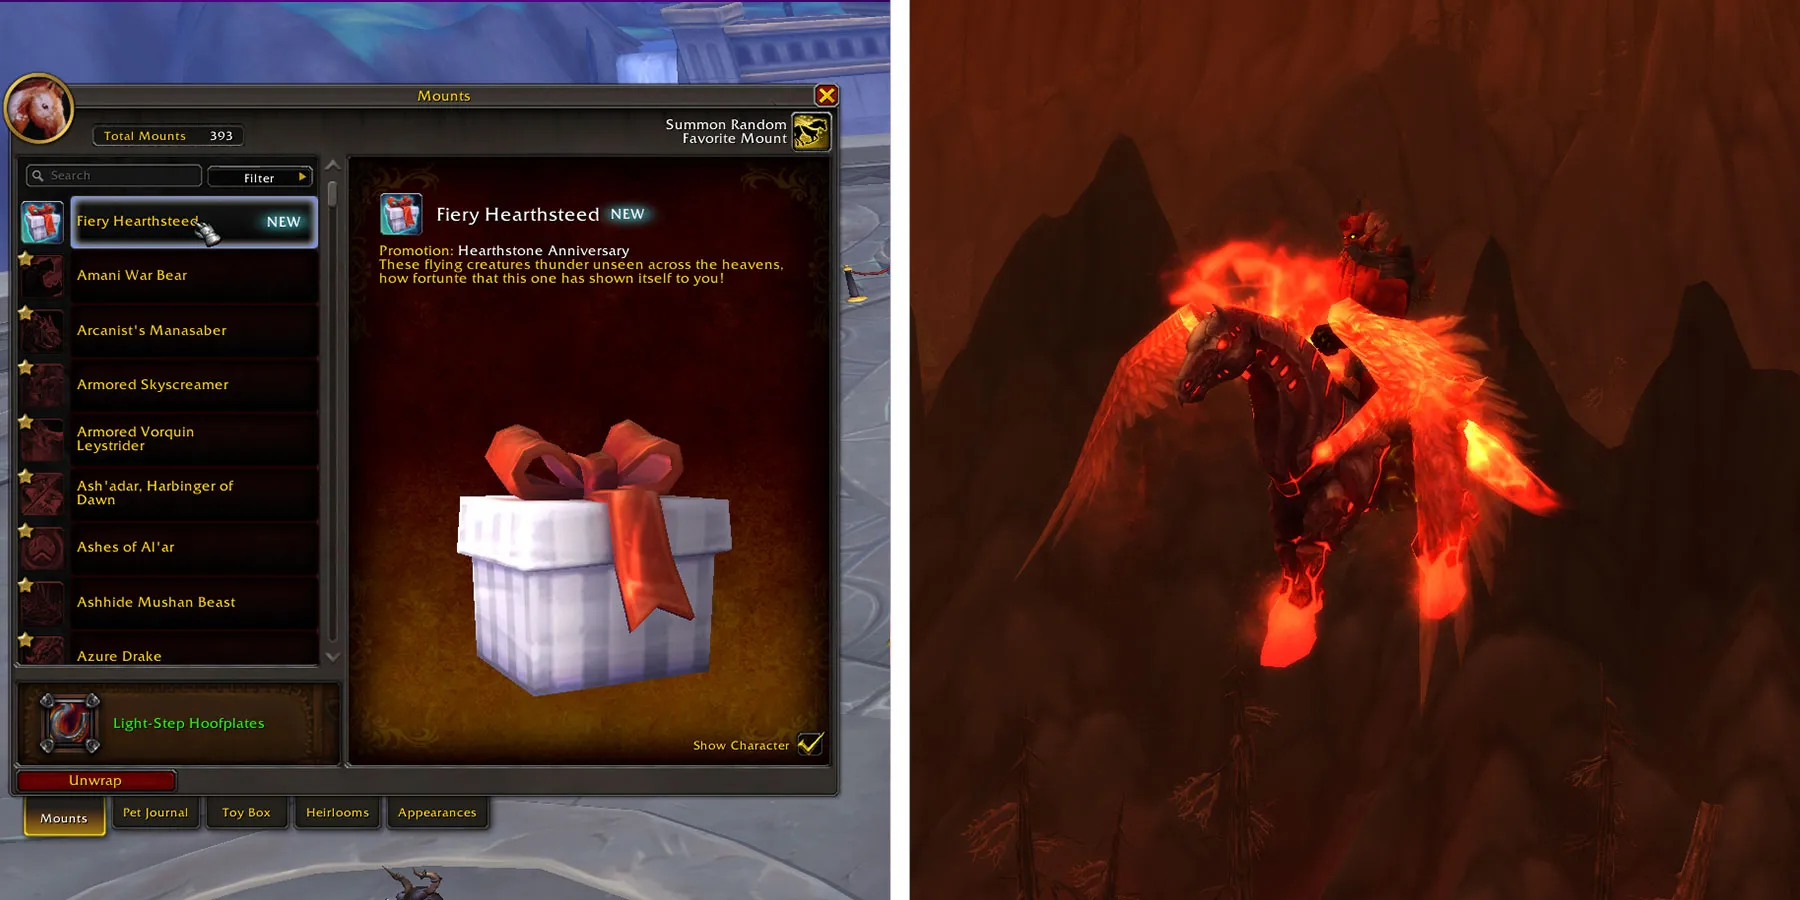 Monte Fiery Hearthsteed in World of Warcraft